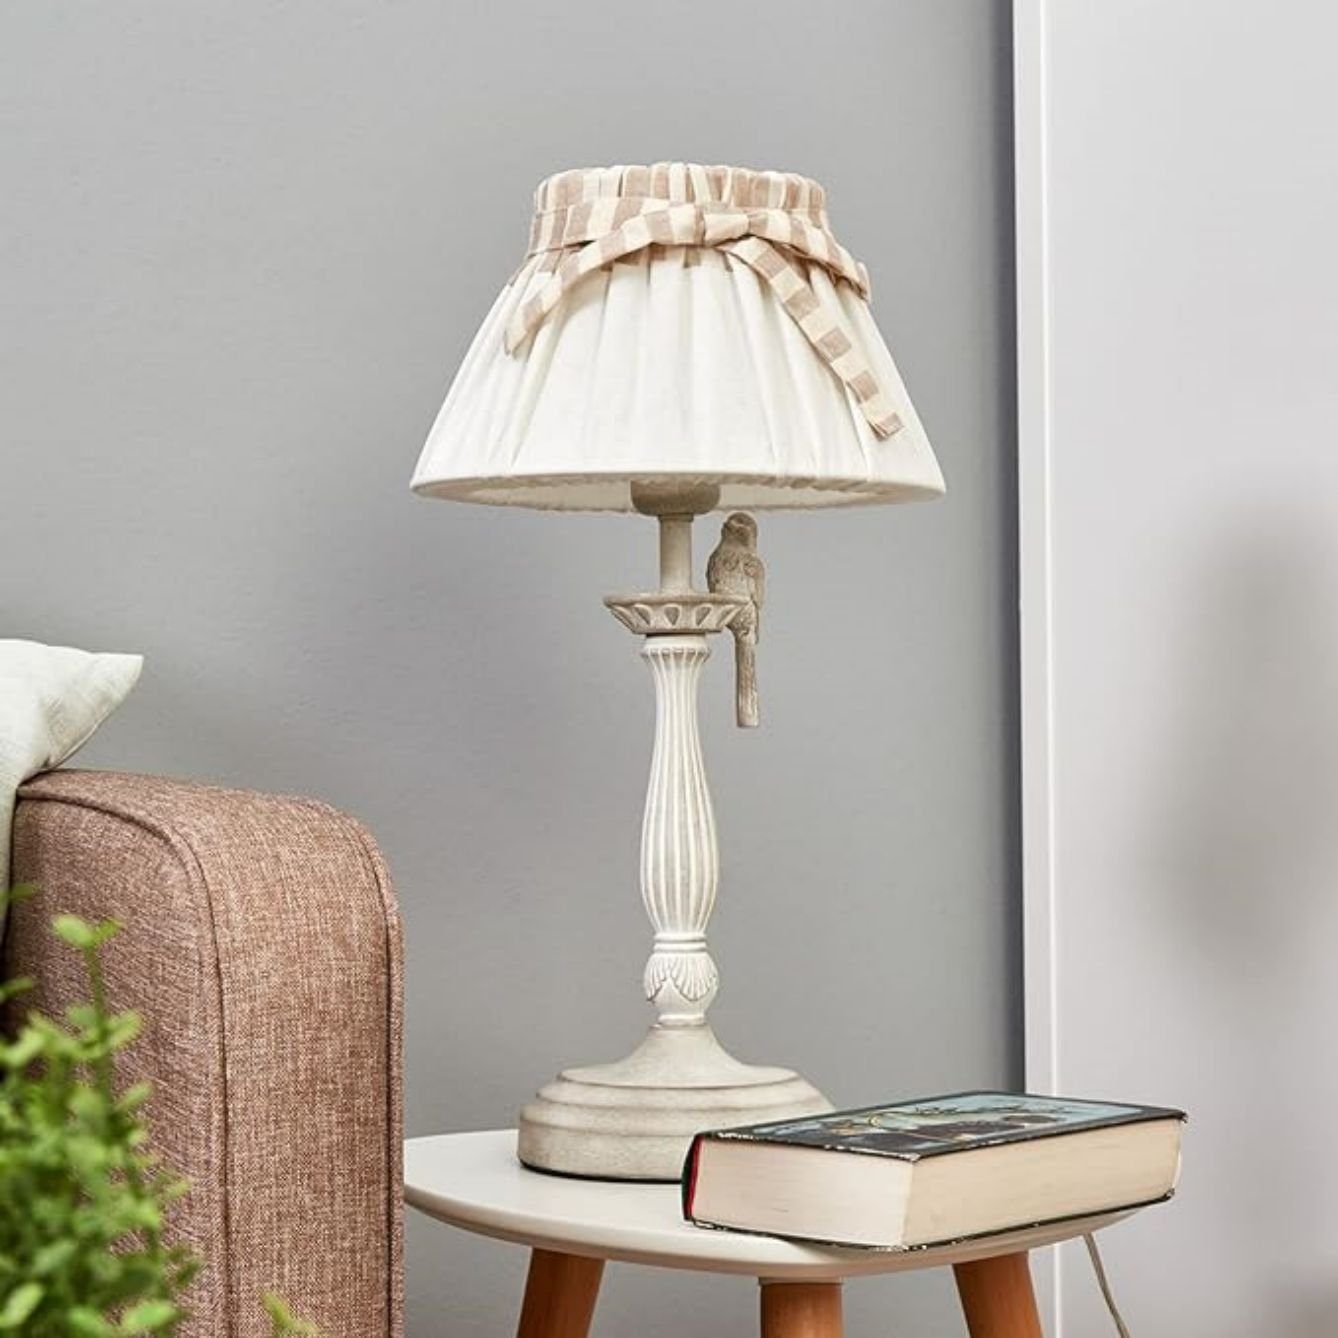 JDONG Nachttischlampe Vintage Tischleuchte mit Vogelschmuck, Leinenschirm mit Schleifchen, E27, 60W, Höhe 55 cm, Tischlampen für jeden Schreib- oder Nachttisch